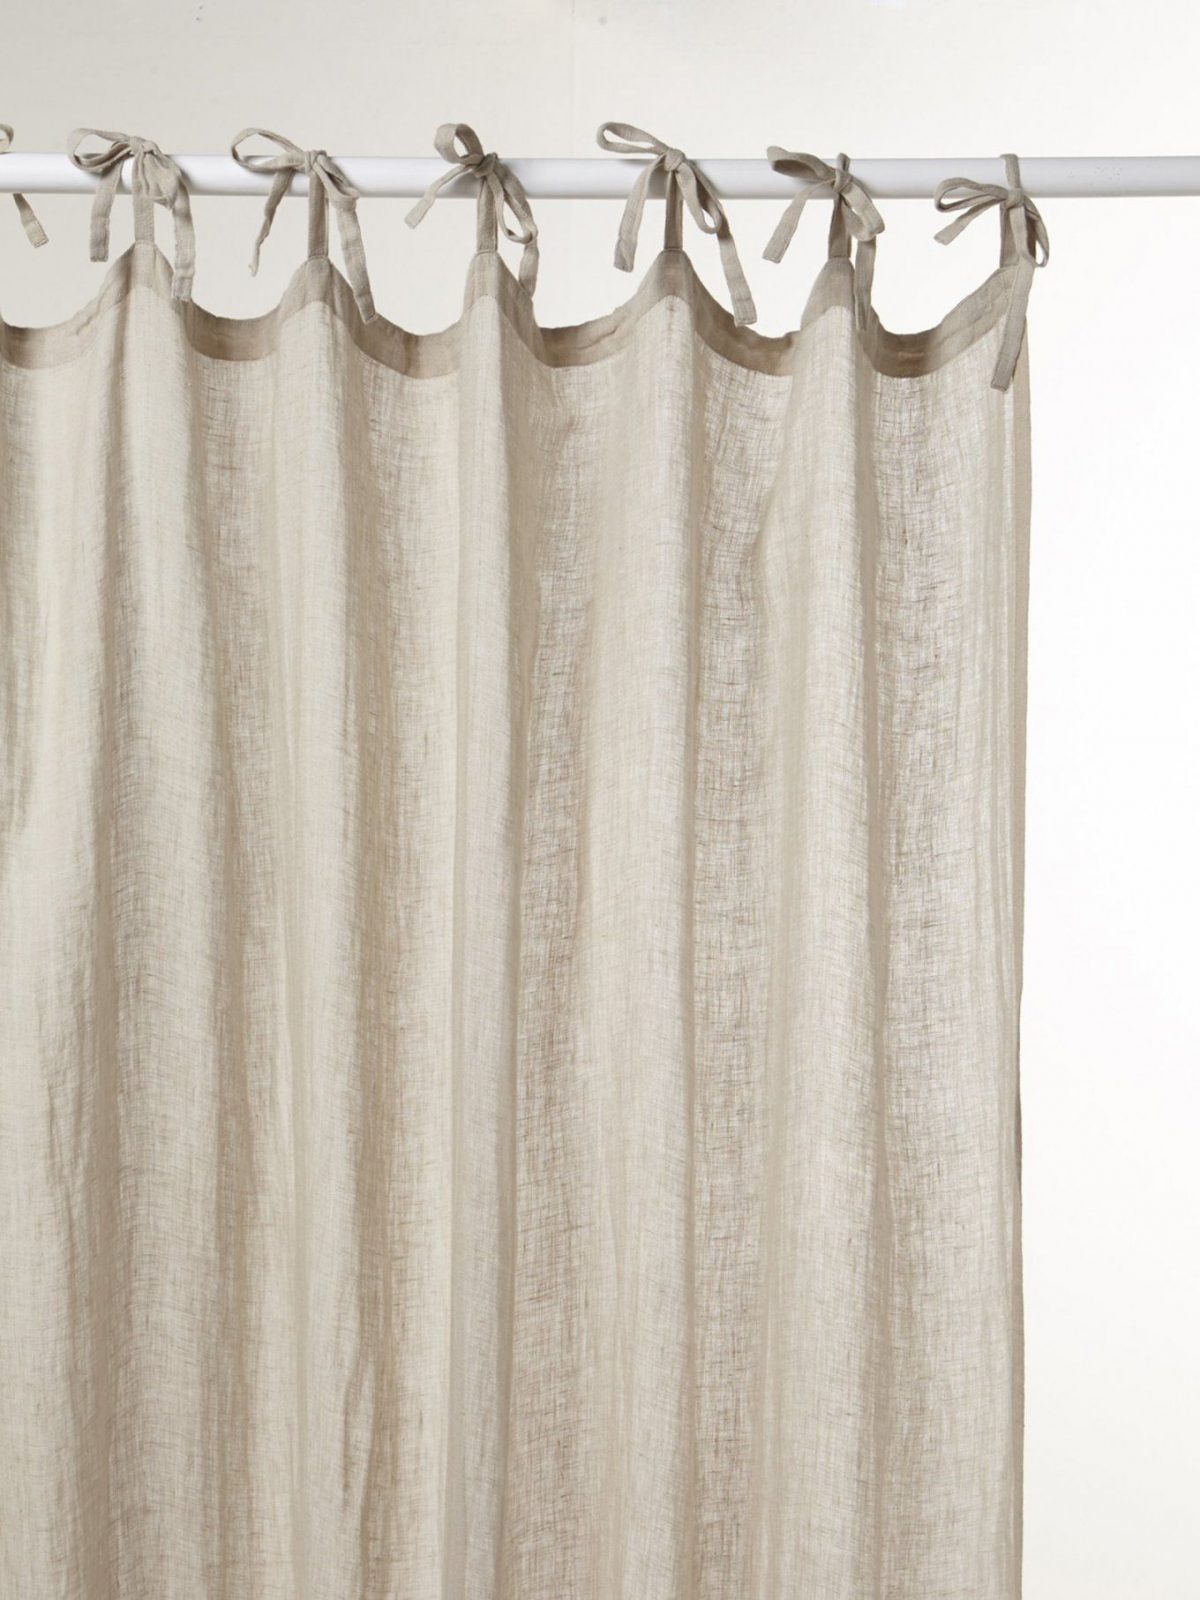 Vorhang Zum Binden – Zuhause Image Idee von Vorhang Schlaufen Zum Binden Bild